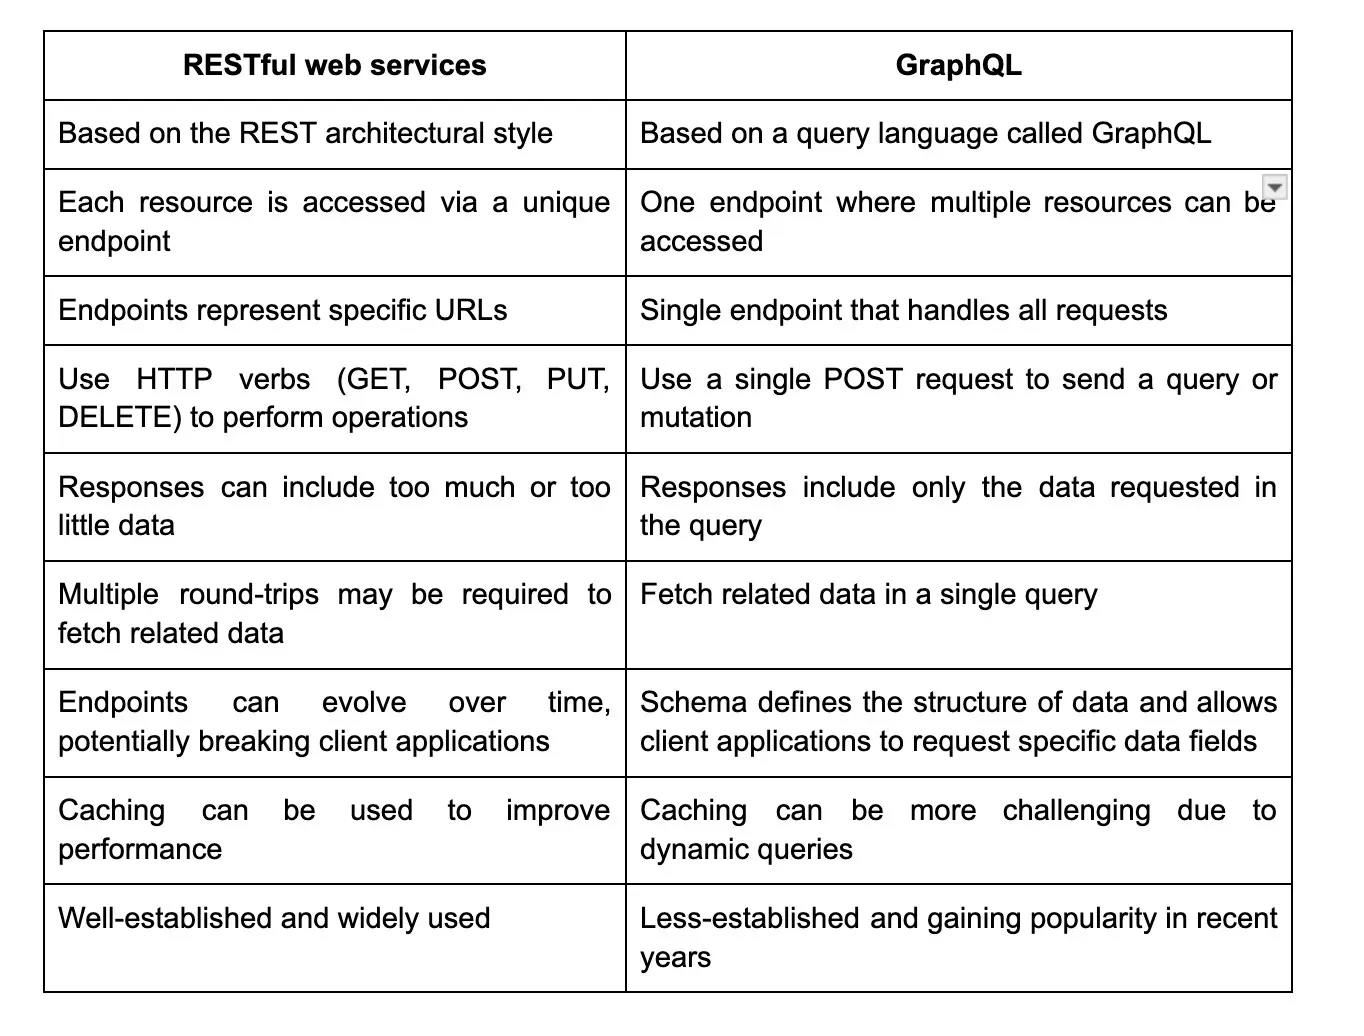 restful vs graphql.webp